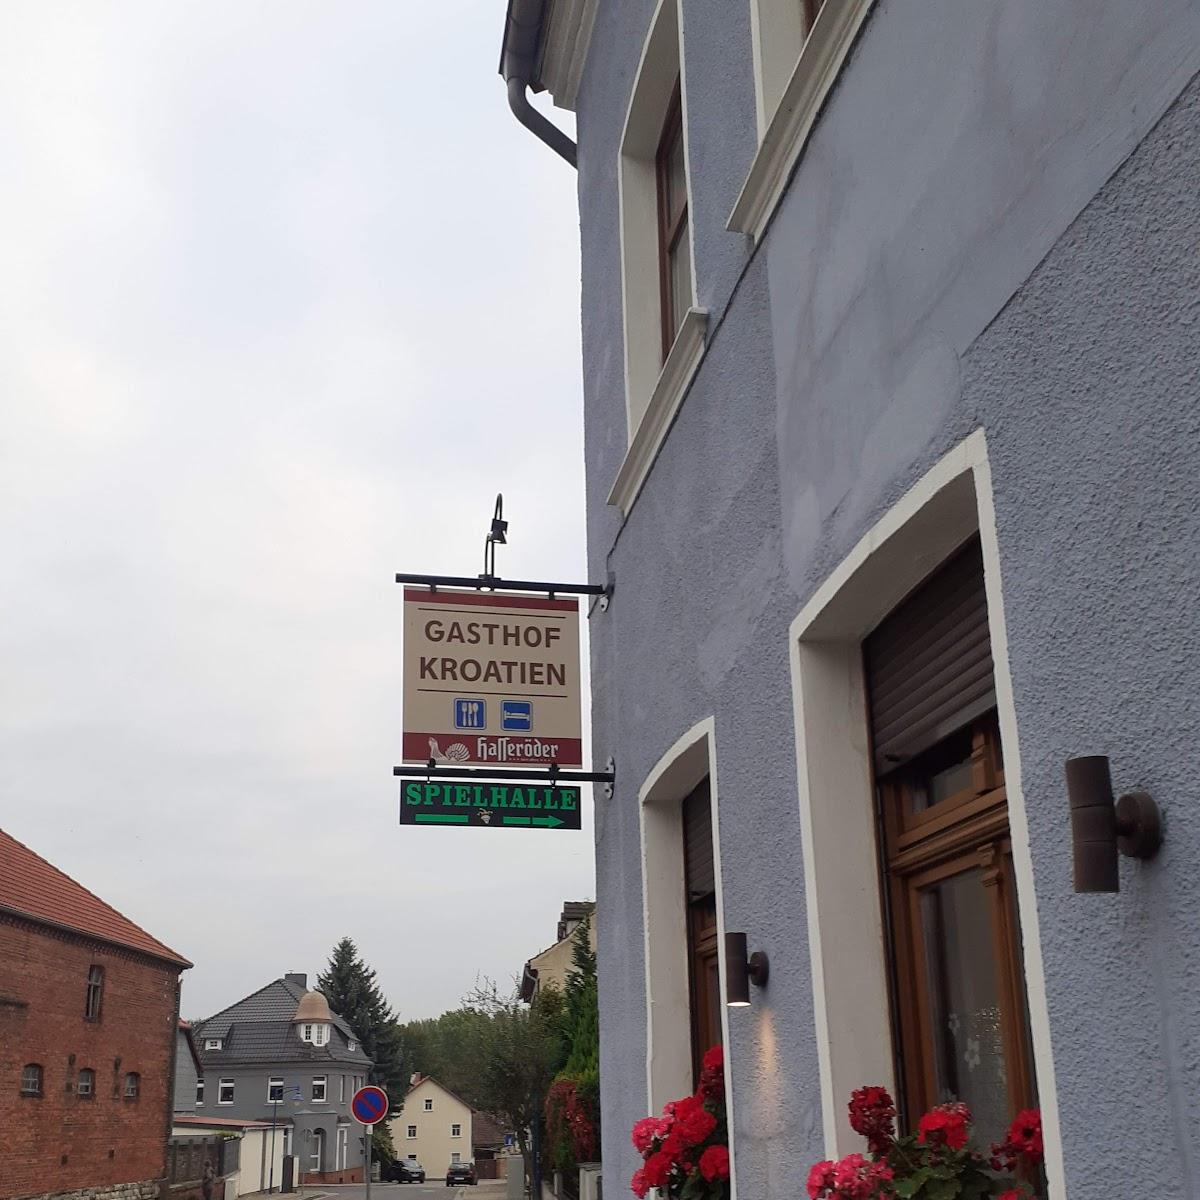 Restaurant "Gasthof Kroatien" in Eilsleben